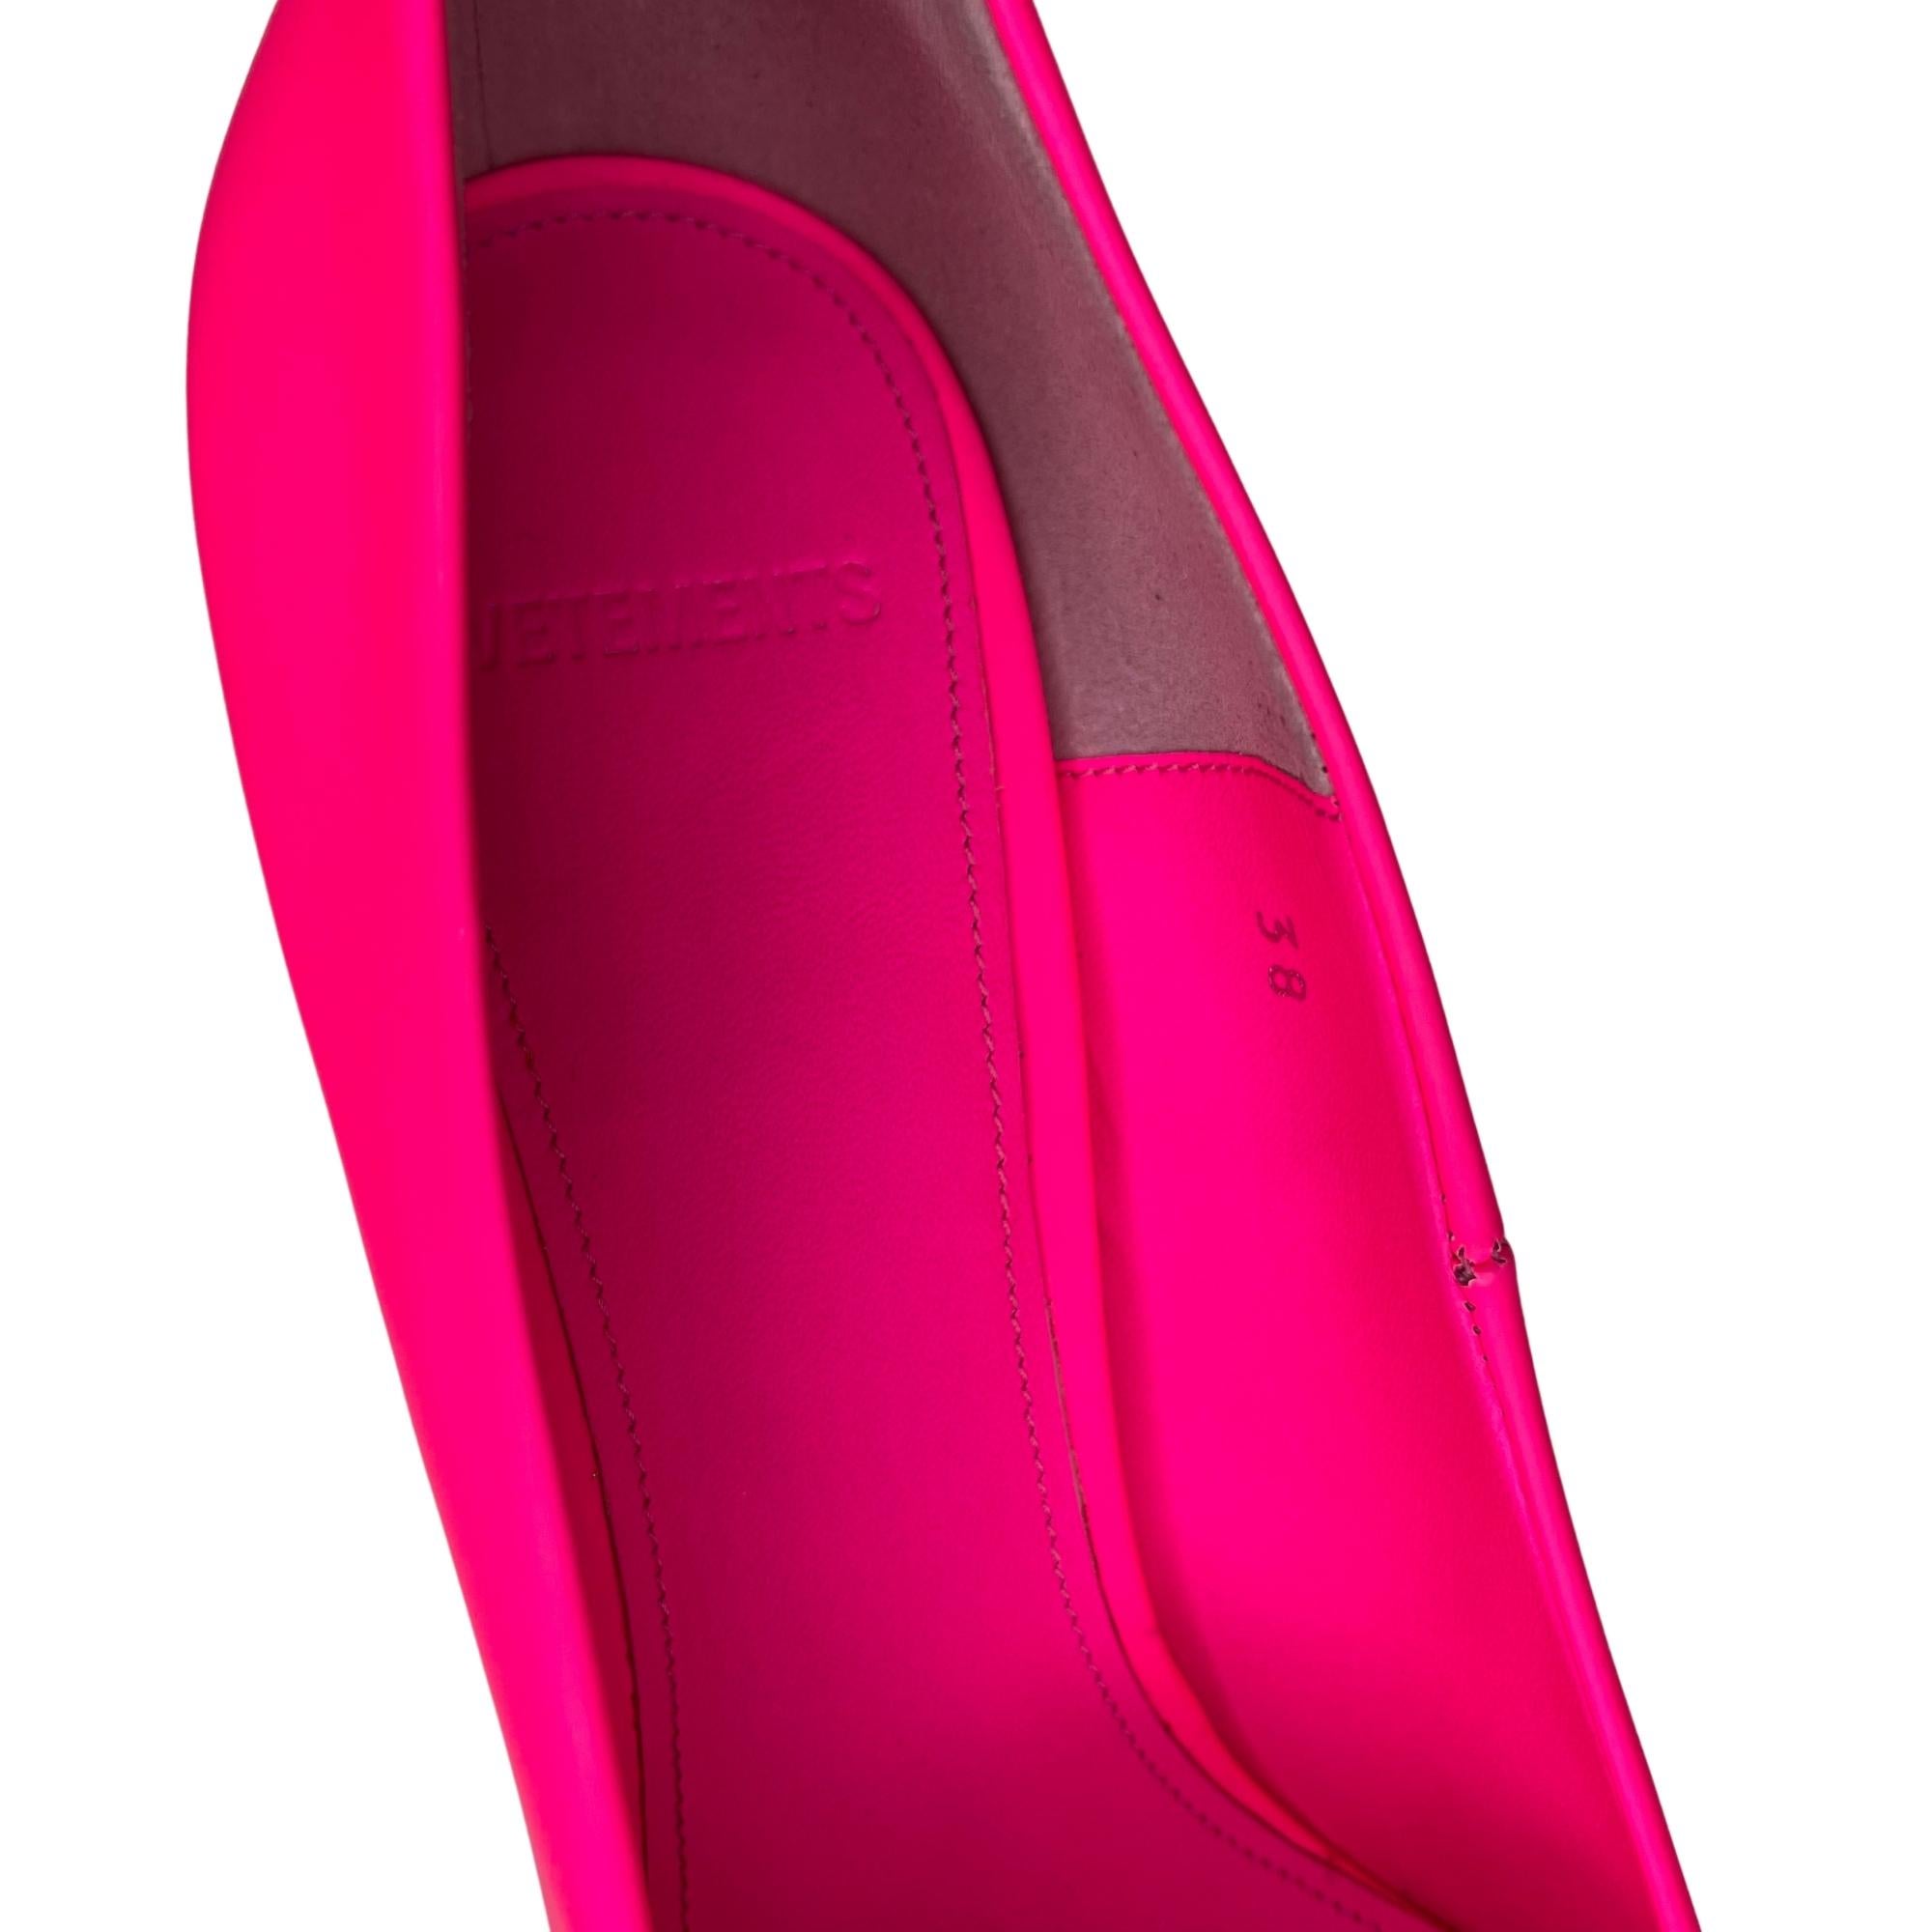 Vetements Rubberized Leather Fluorescent Pink Décolleté Heels (38 EU) For Sale 2